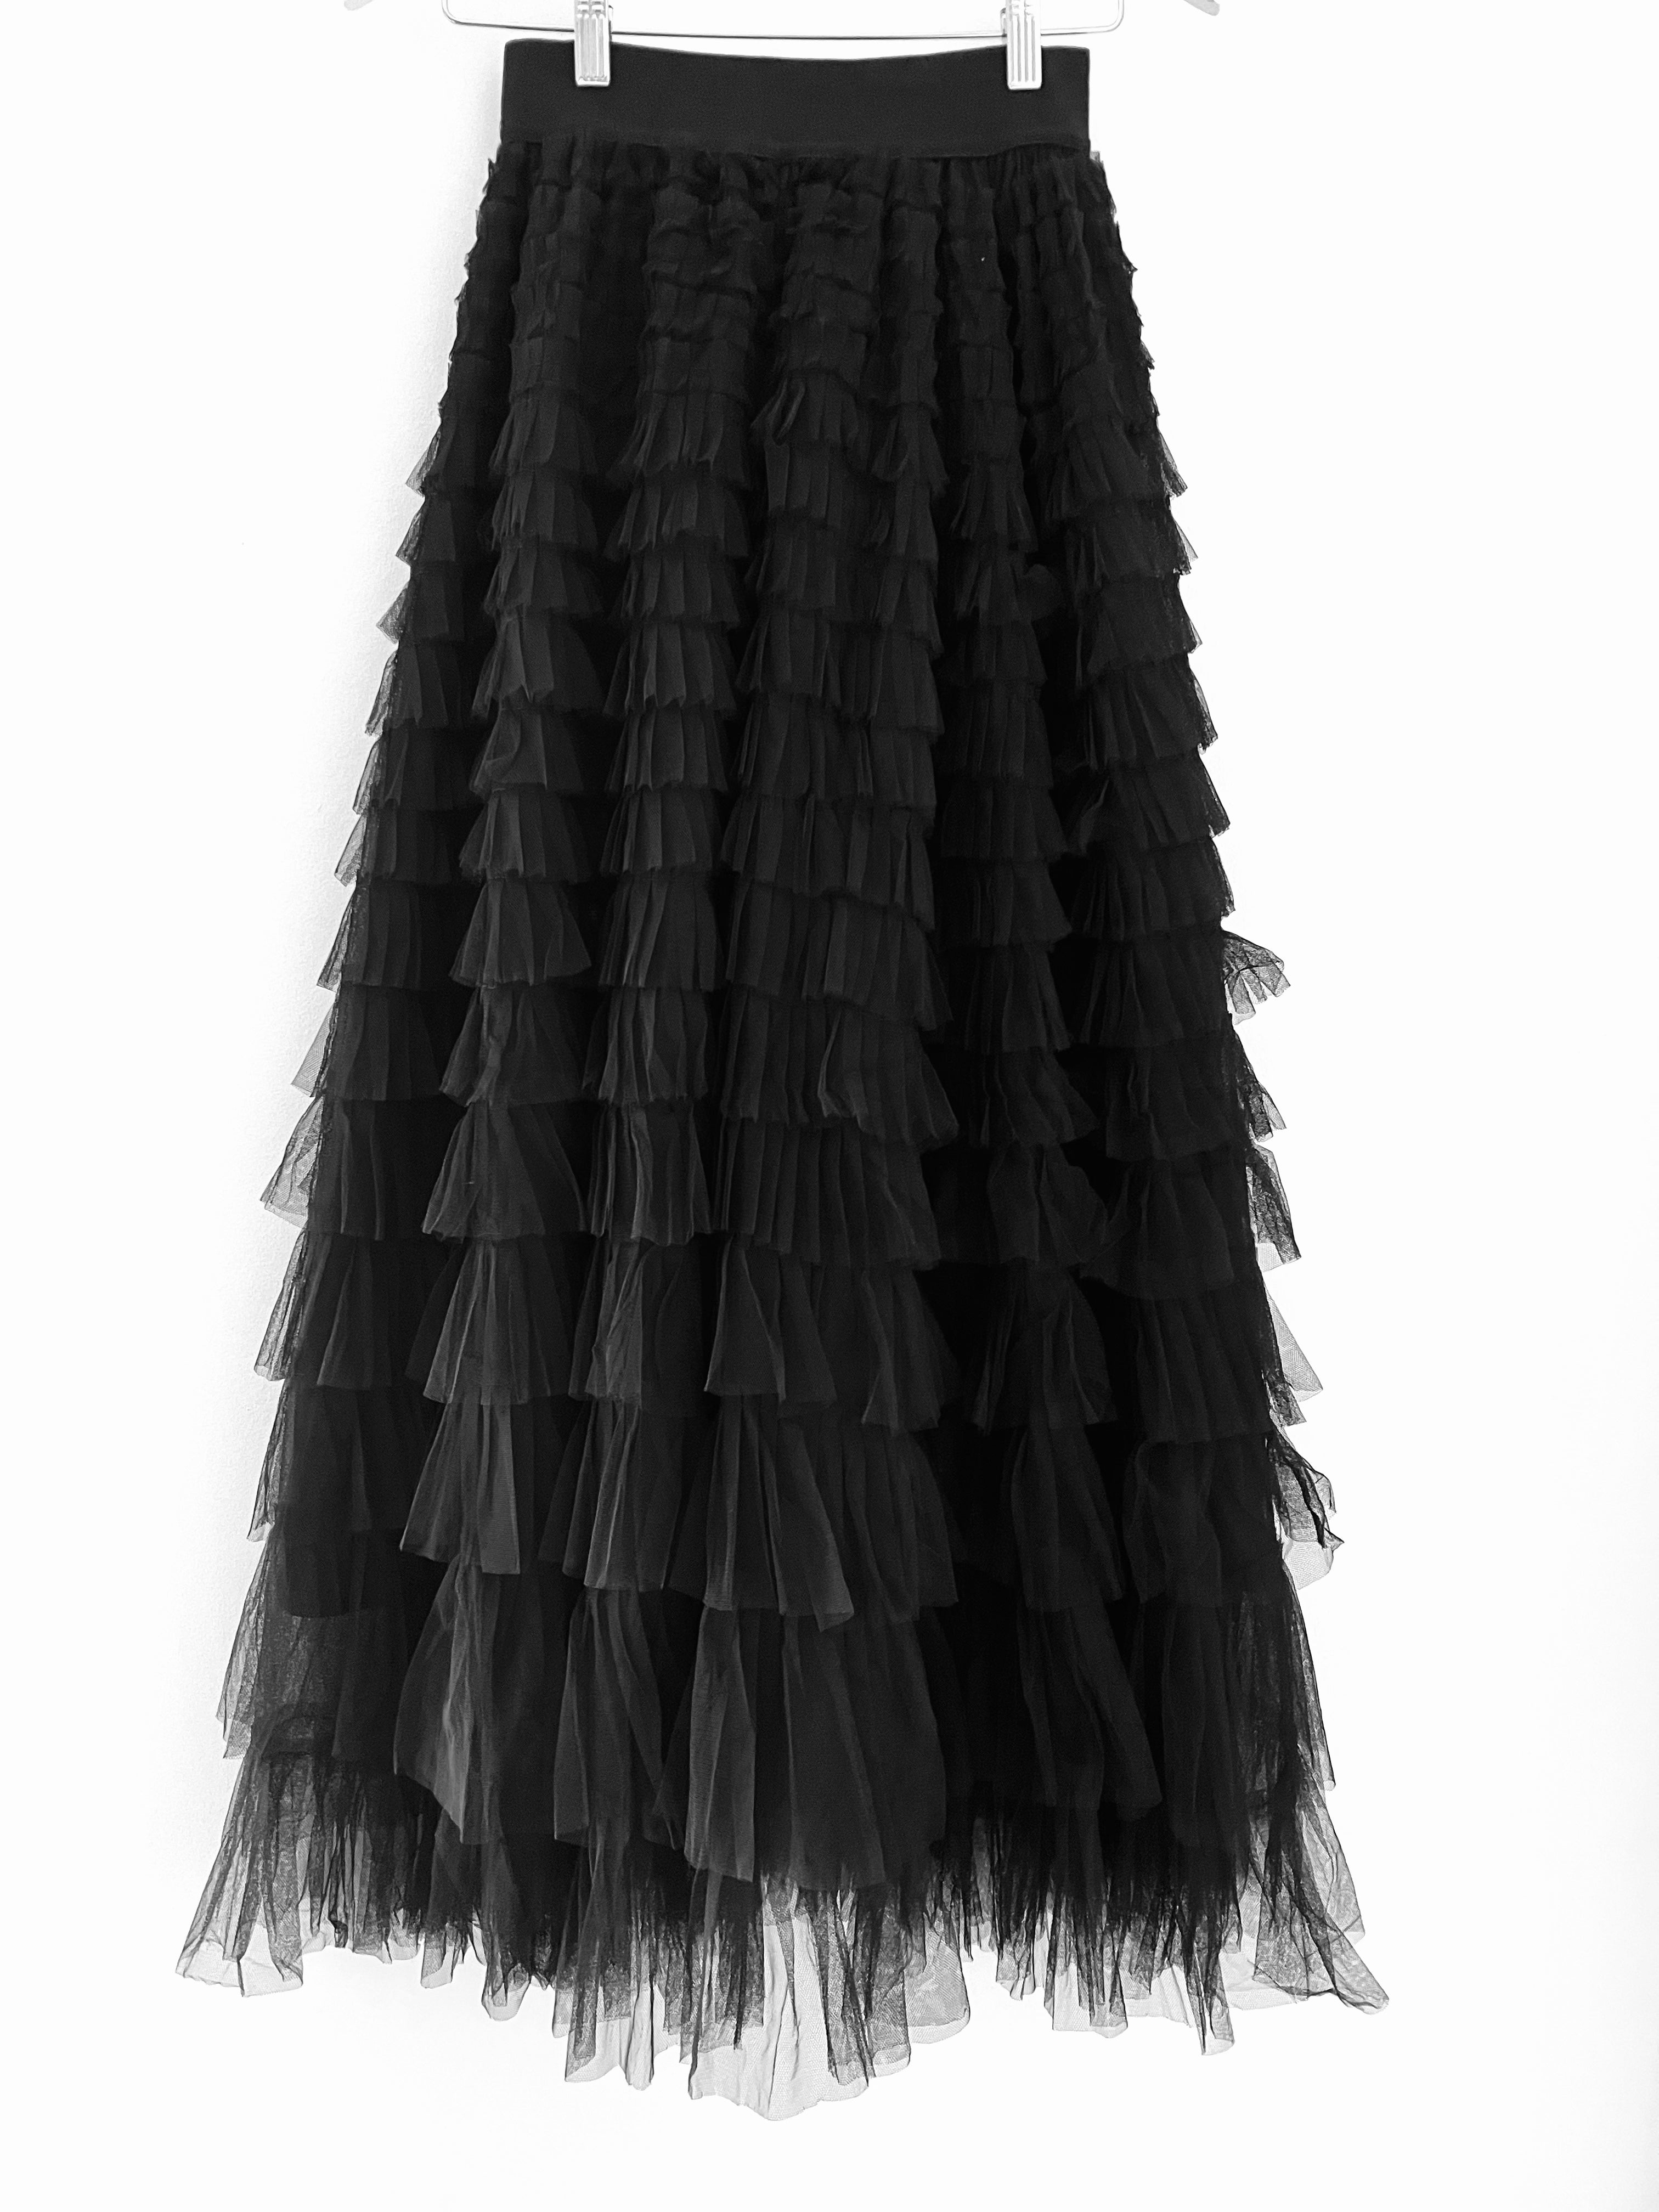 Tulle Midi Skirt in Black